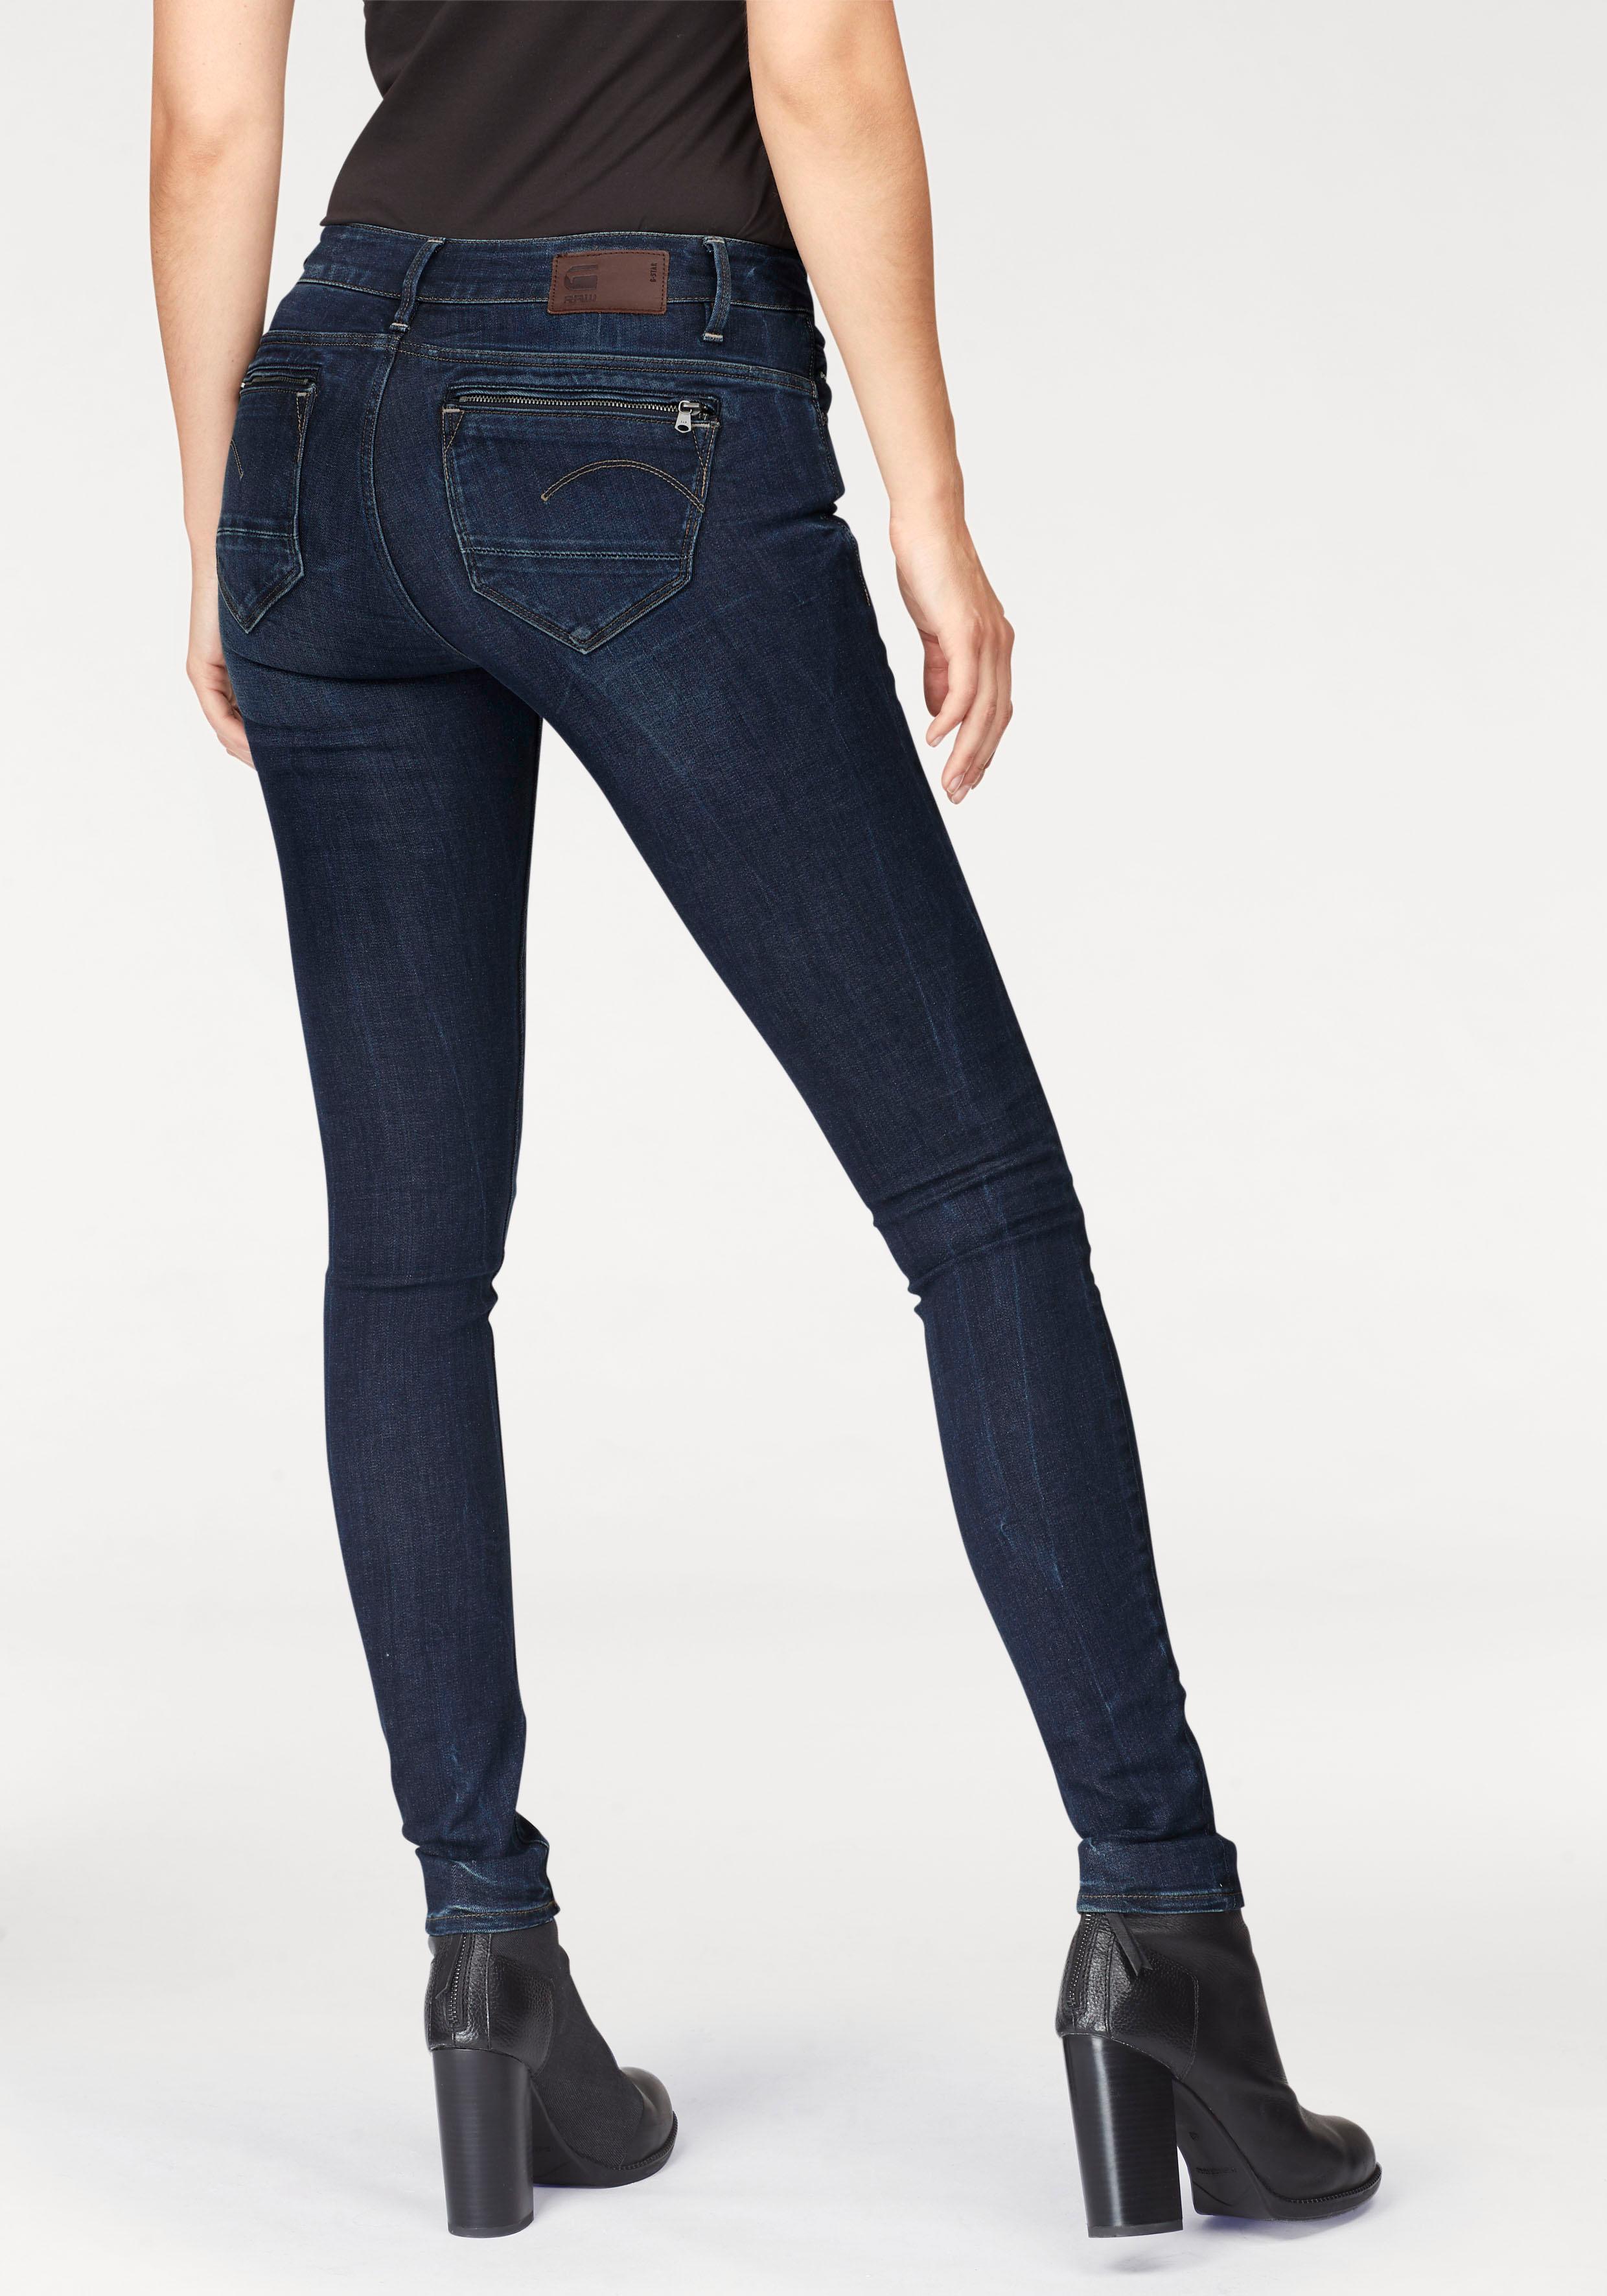 G-STAR RAW Damen Midge Zip Mid Waist Skinny Jeans, Blau (dk Aged 6553-89), 32W / 32L